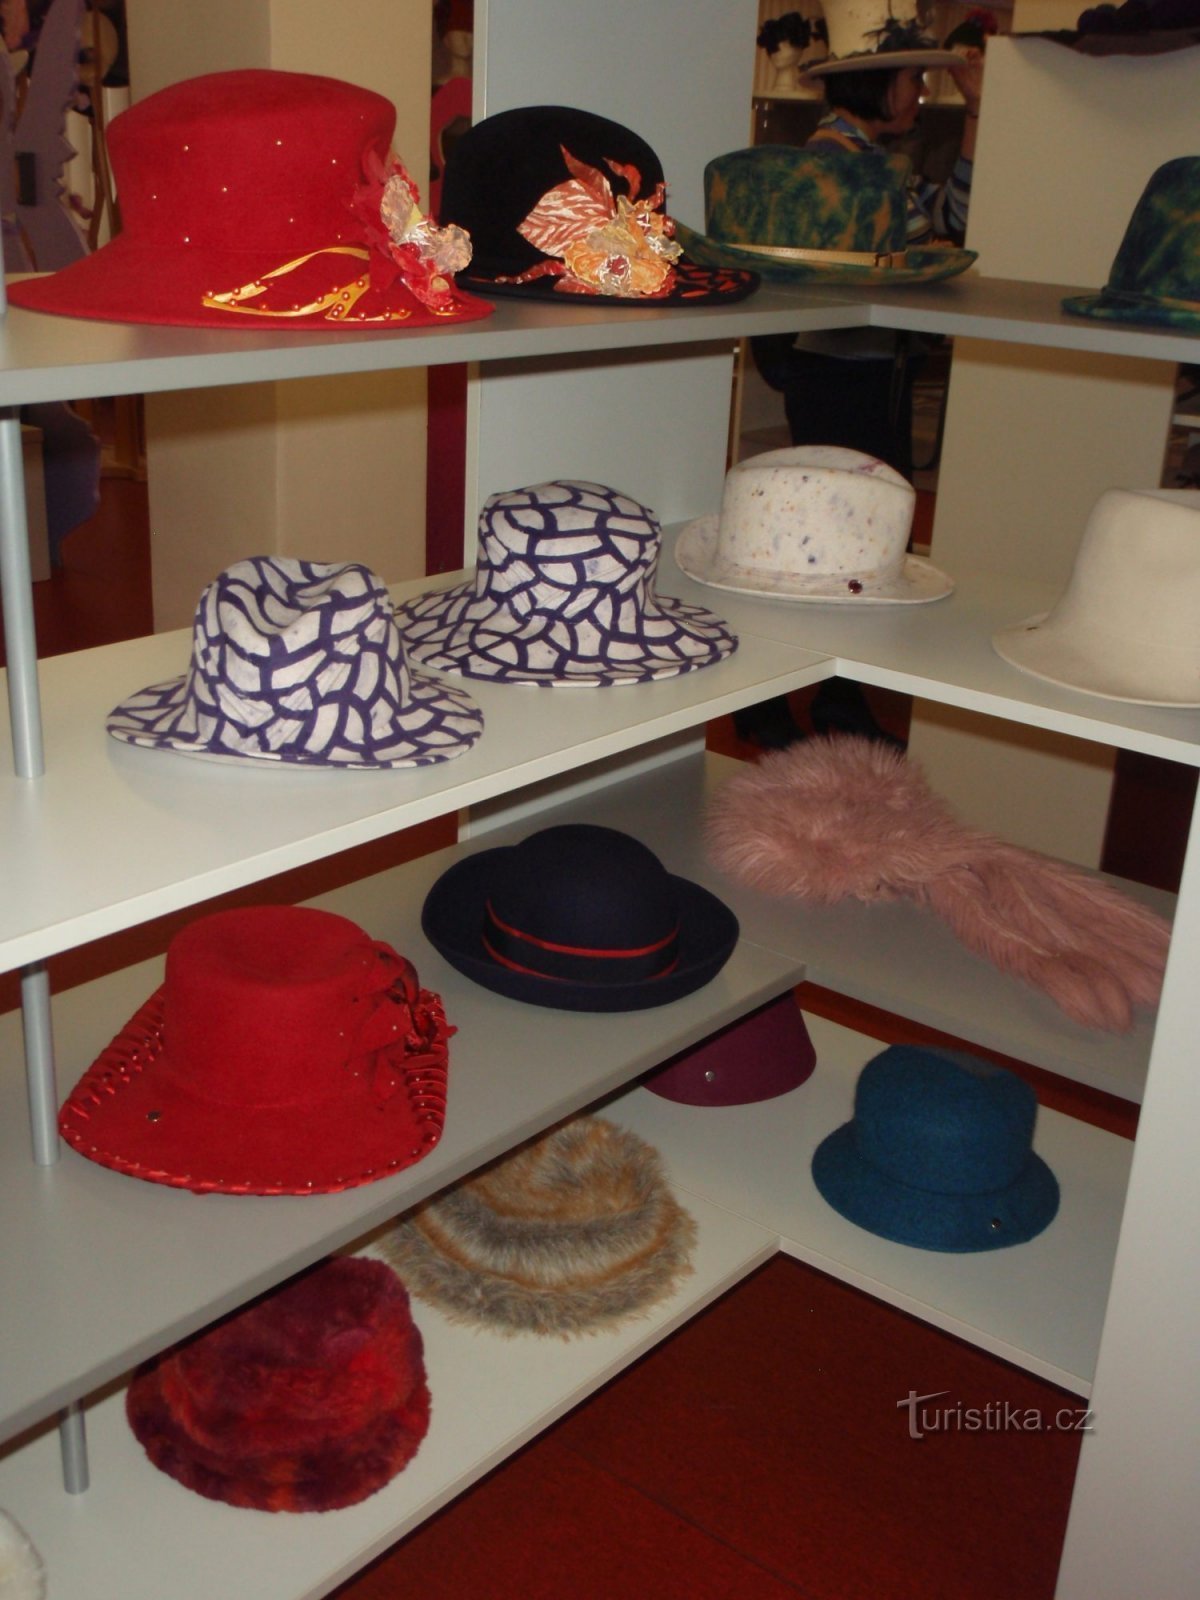 exhibition of hats in Nové Jičín